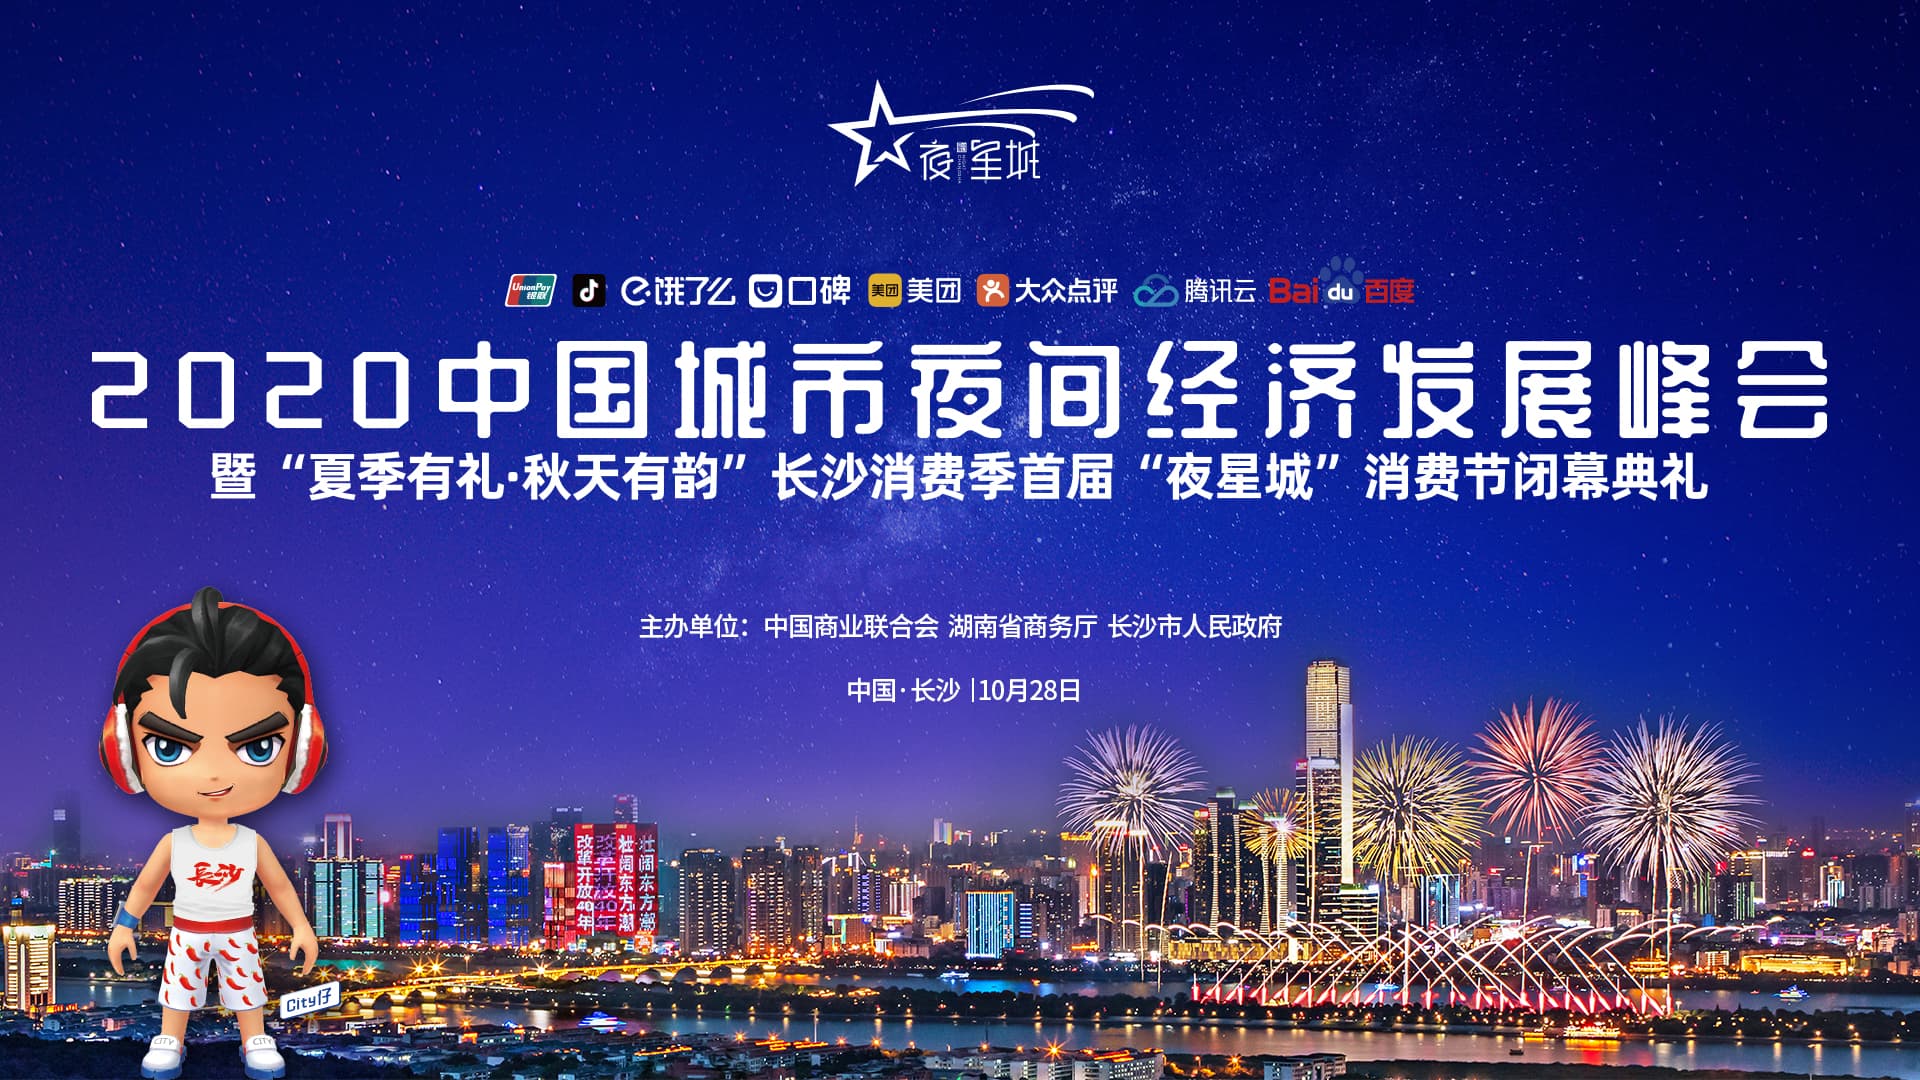 2020中国城市夜间经济发展峰会